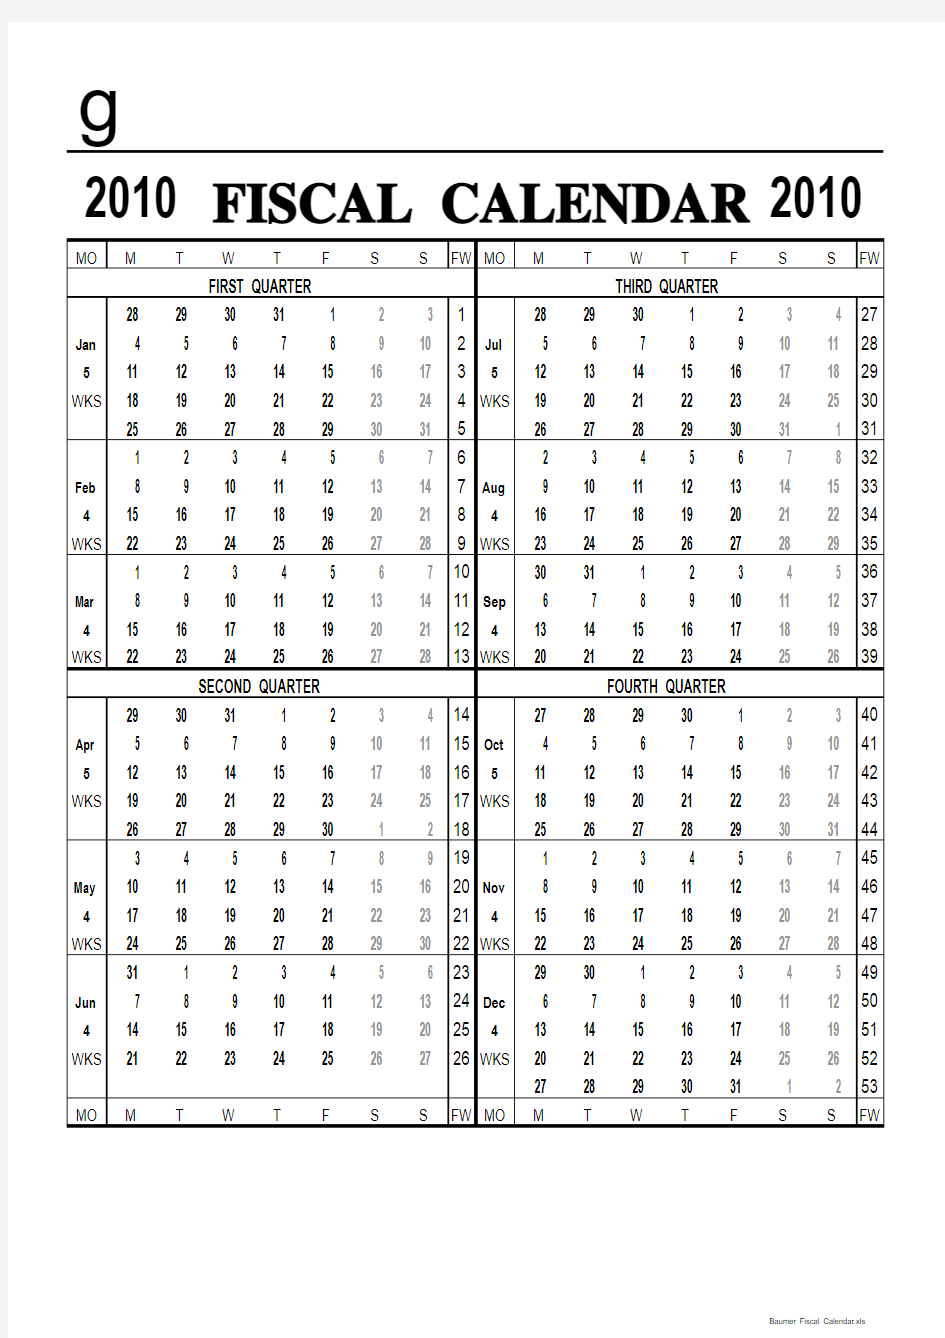 Fiscal Calendar.xls